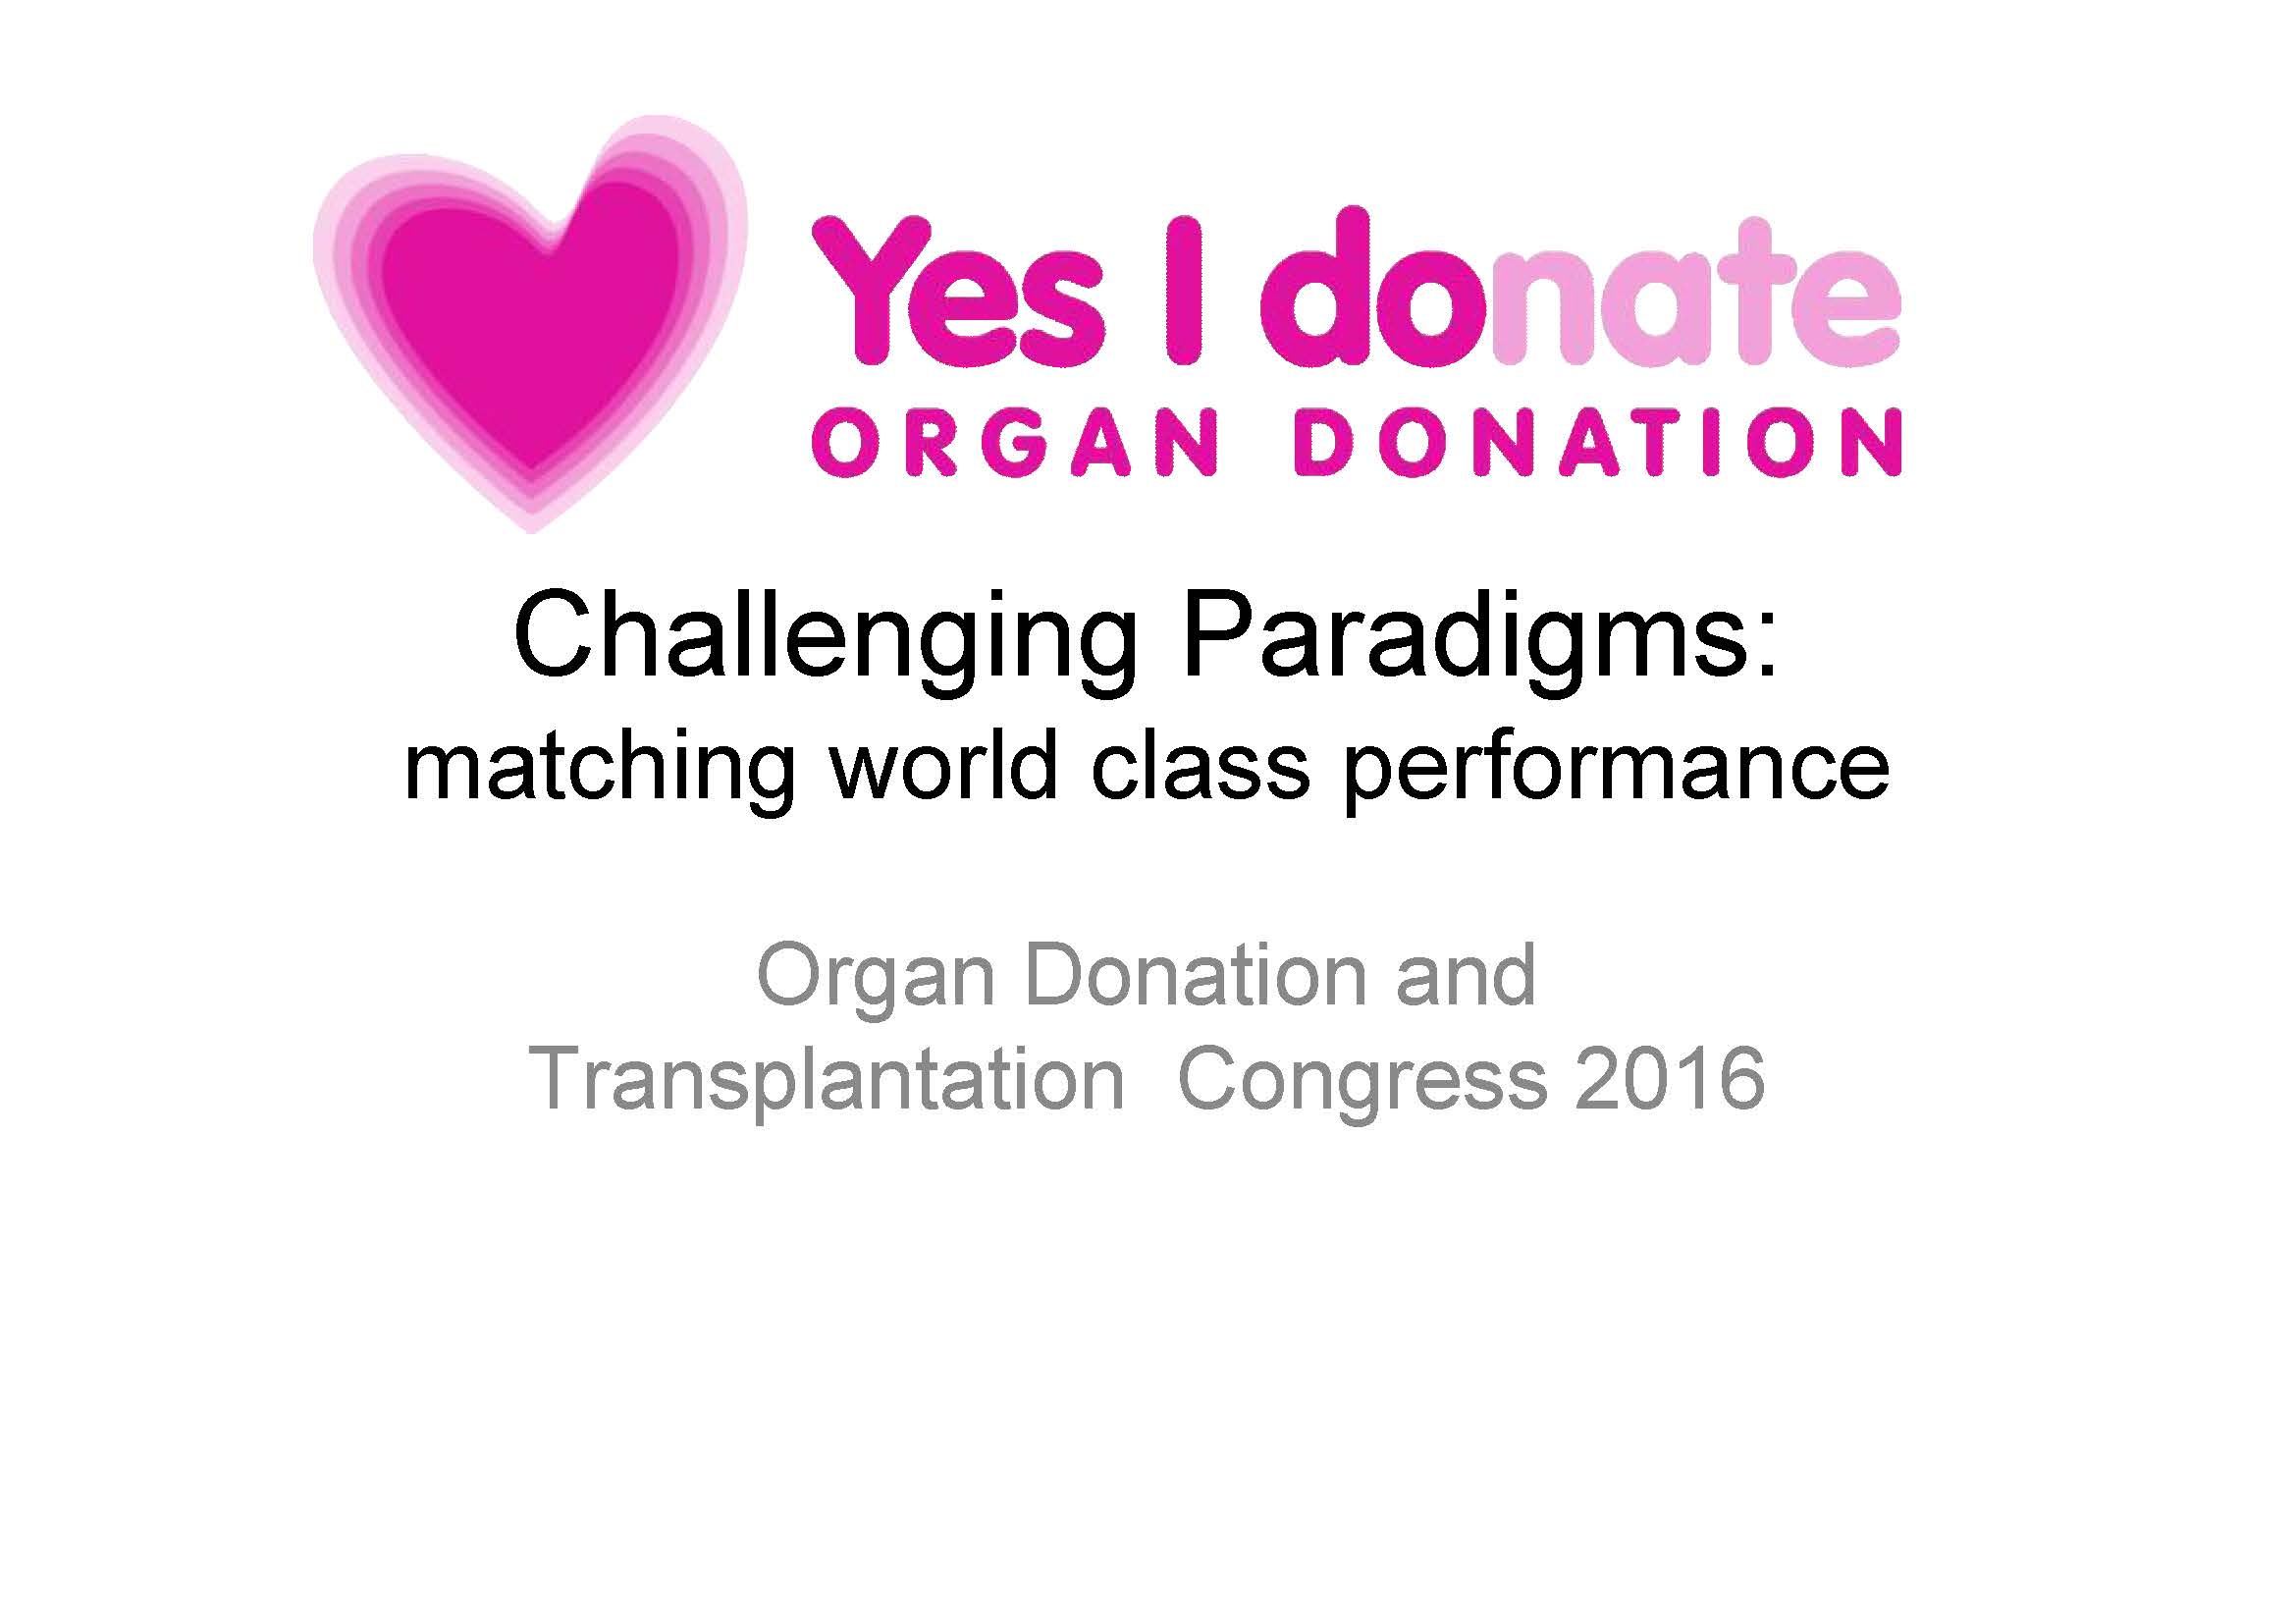 National Organ and Transplantation Congress 2016